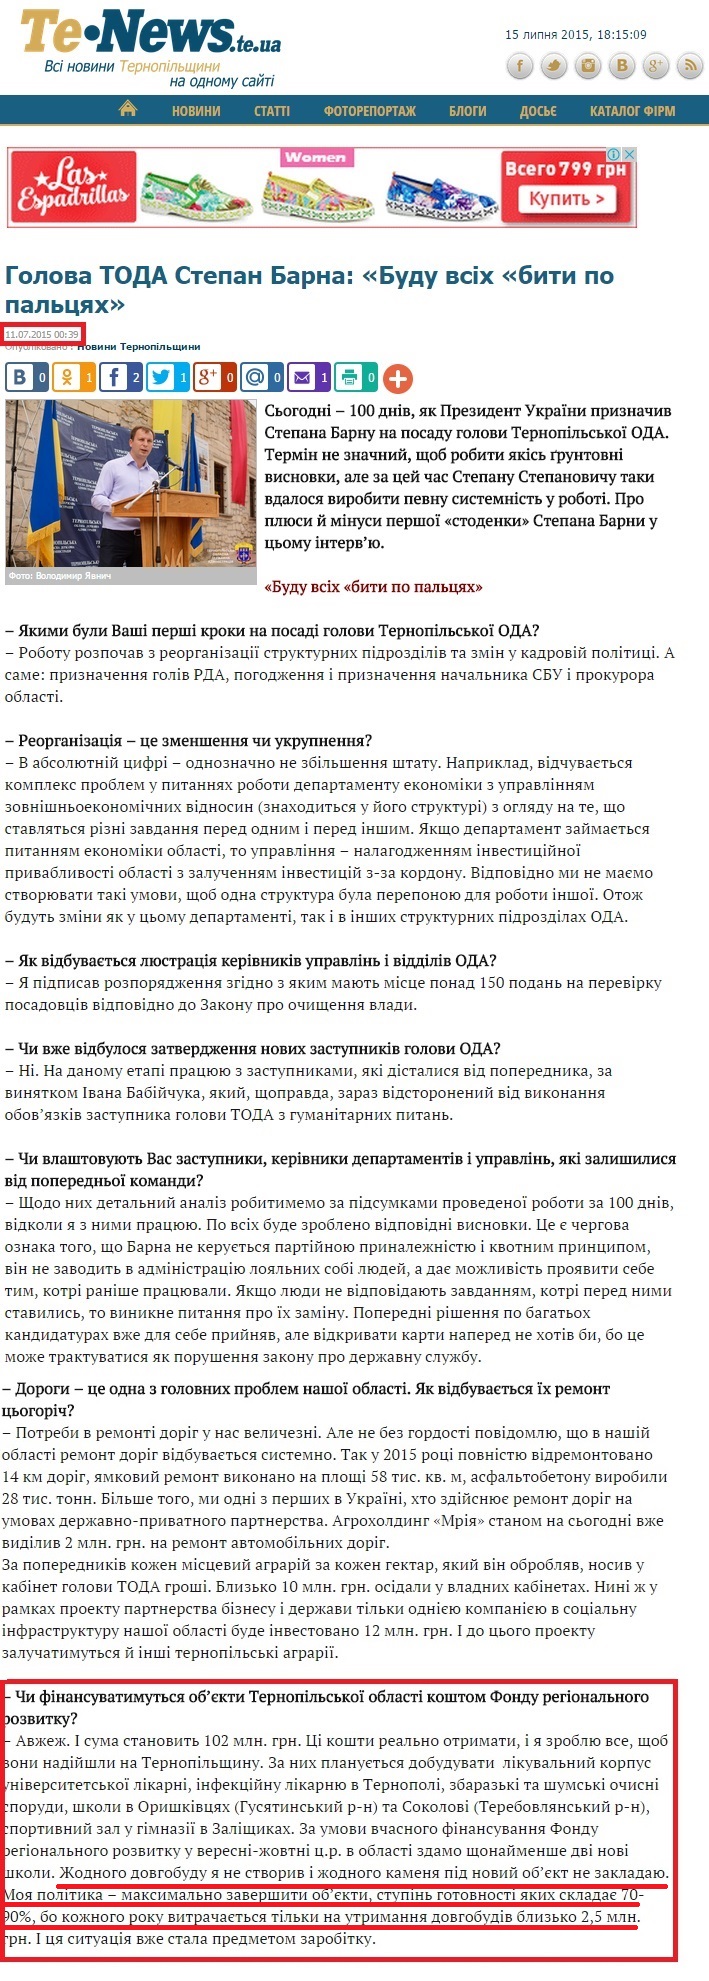 http://tenews.te.ua/news_all.php?id=6521